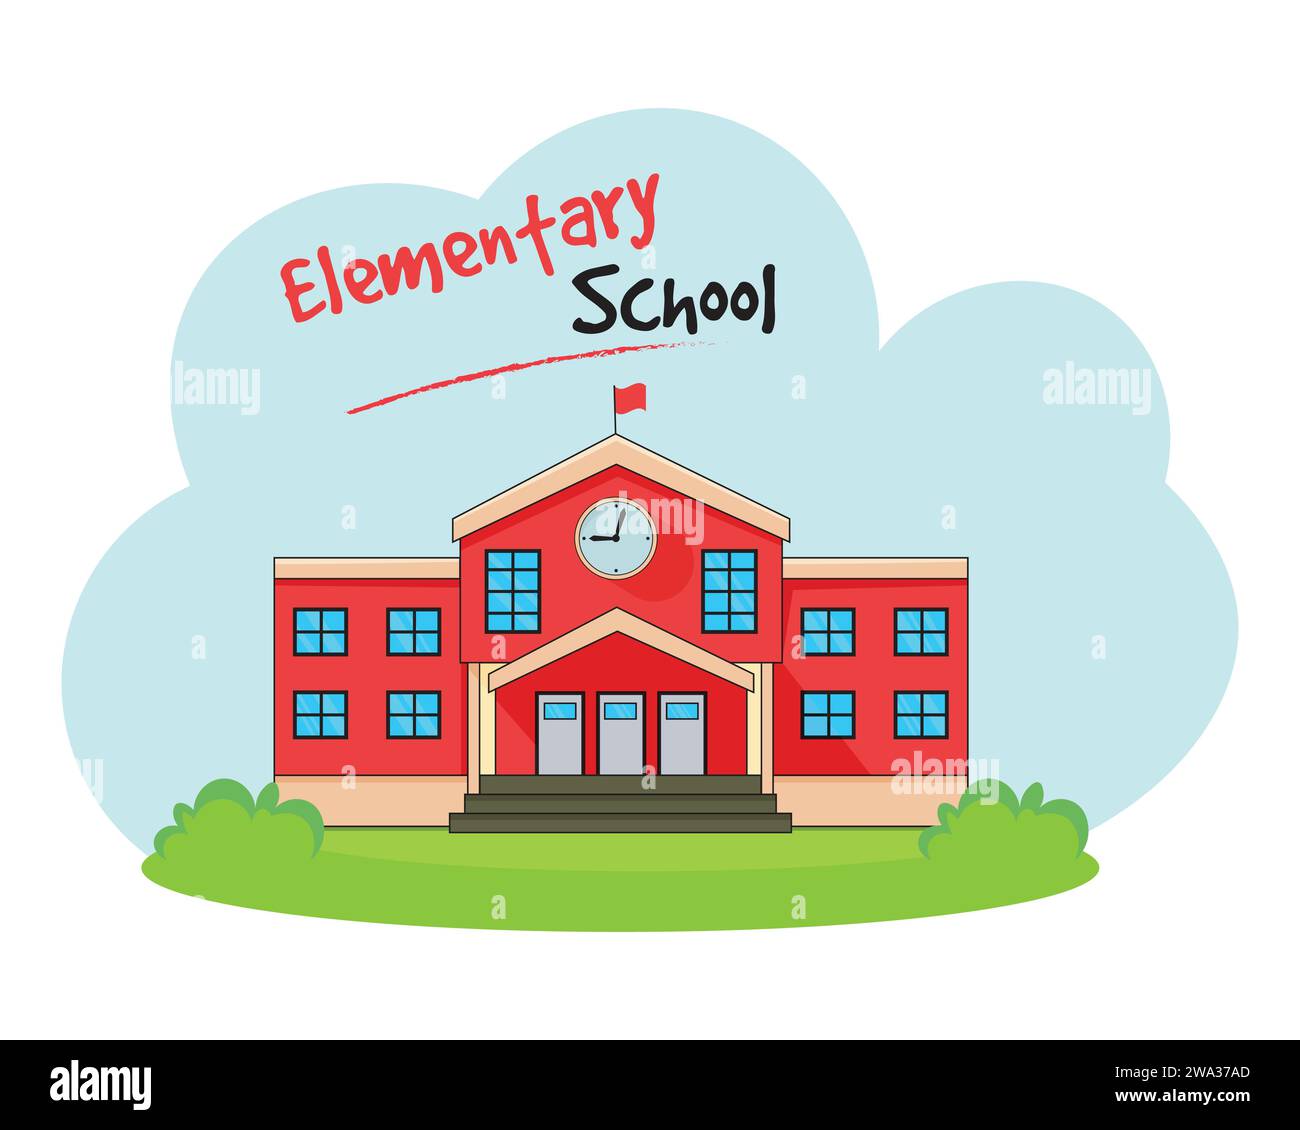 Illustrazione vettoriale della scuola elementare. Edificio scolastico dal design piatto Illustrazione Vettoriale